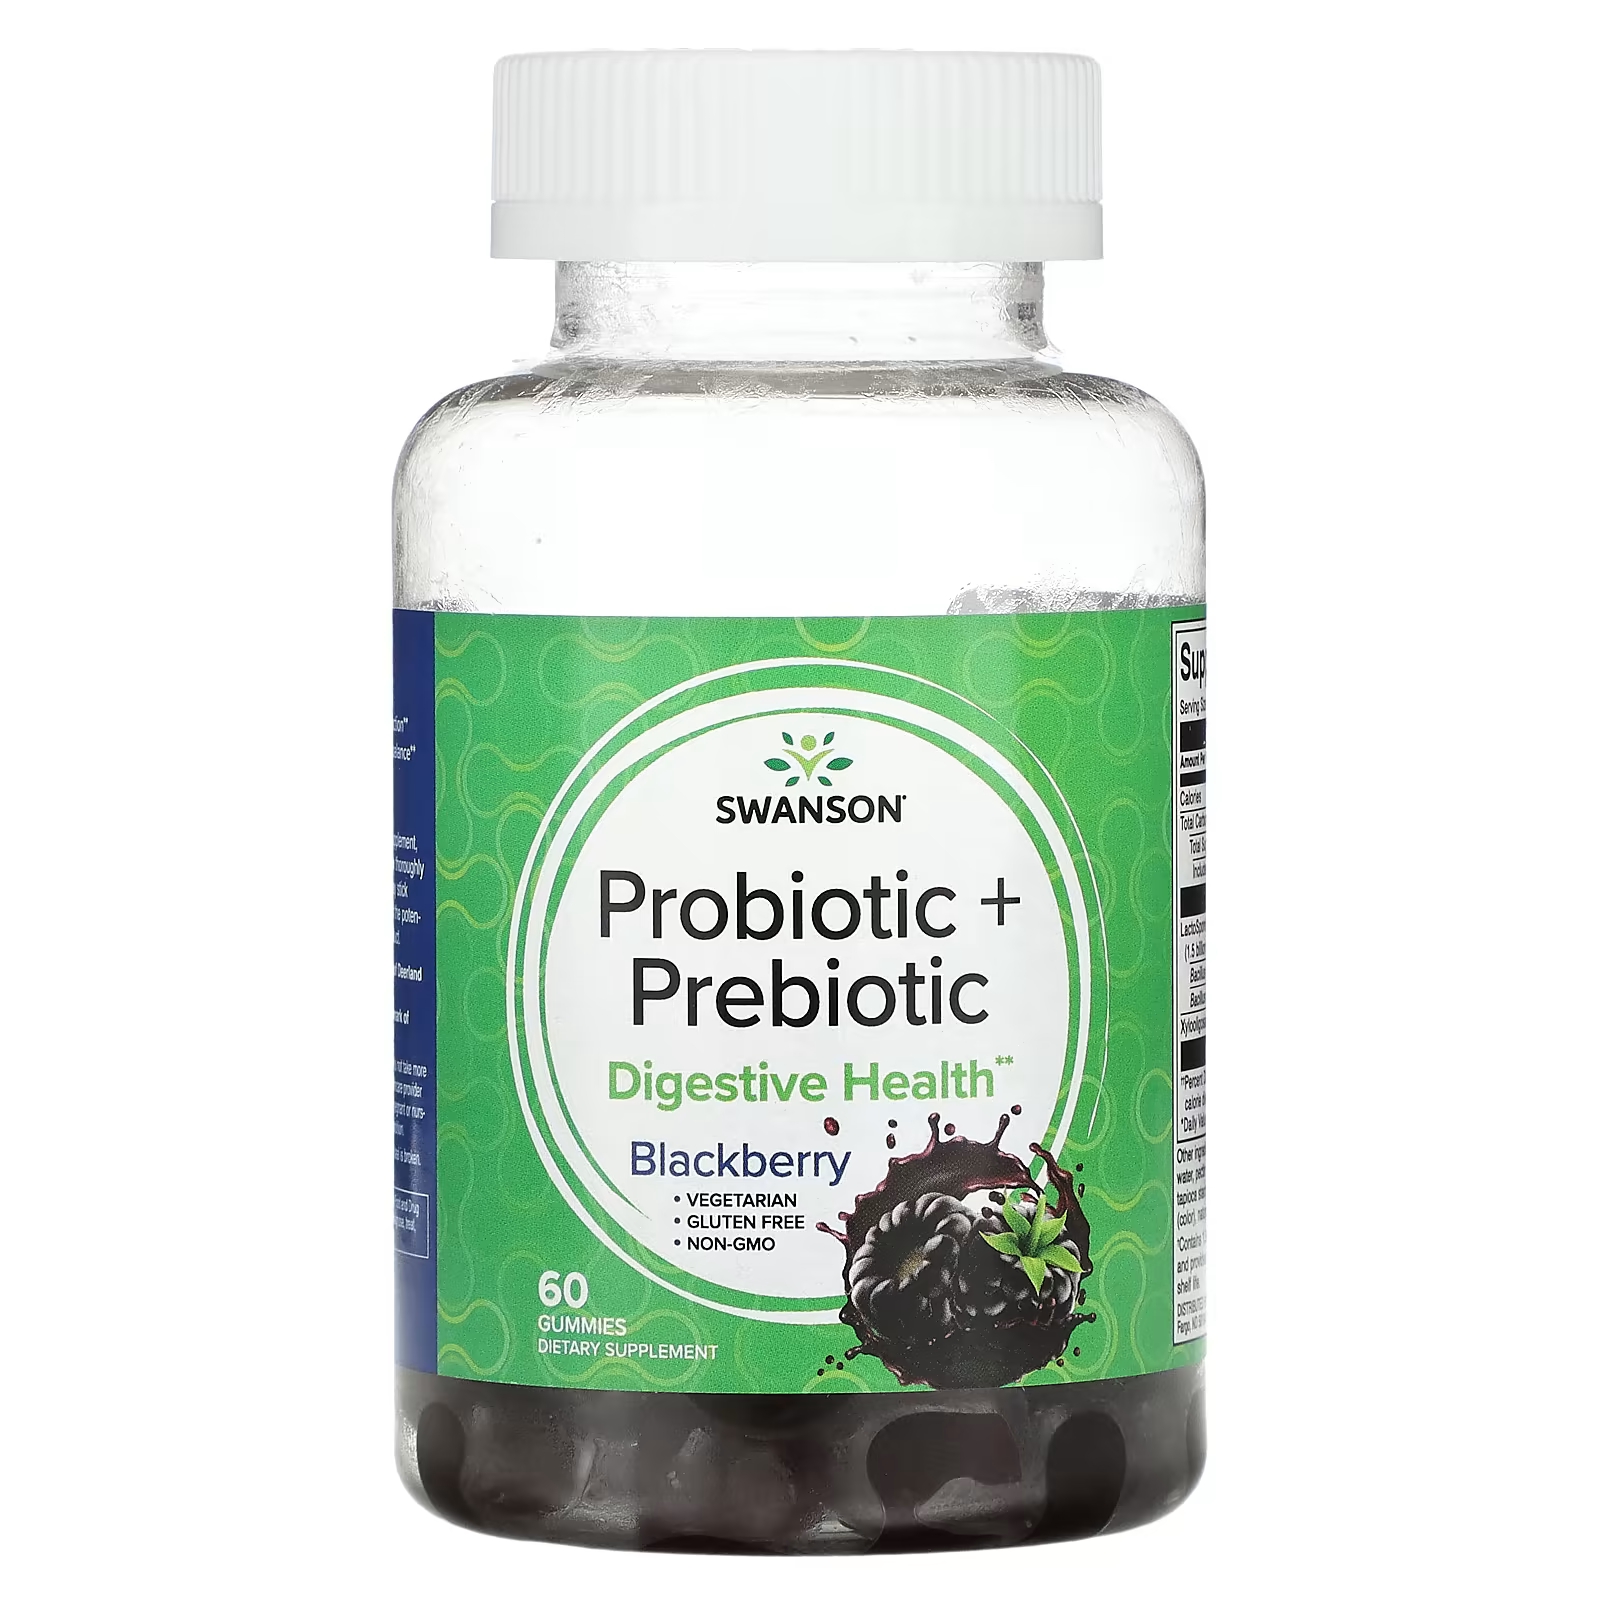 Пищевая добавка Swanson Пробиотик ежевика, 60 жевательных конфет swanson пробиотик и пребиотик ежевика 60 жевательных таблеток